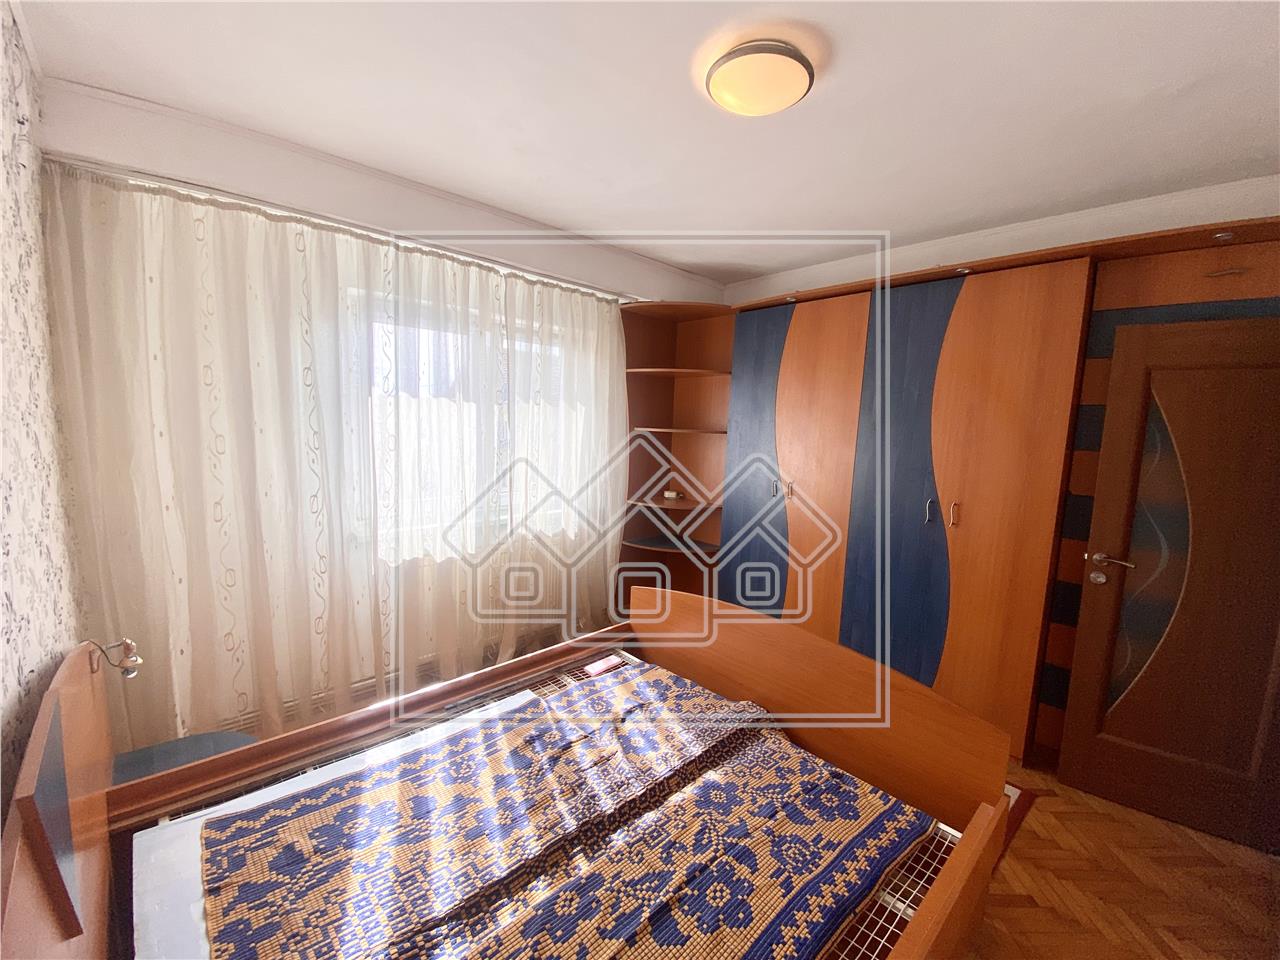 Apartament de vanzare in Sibiu - 4 camere si 2 balcoane - Strand I